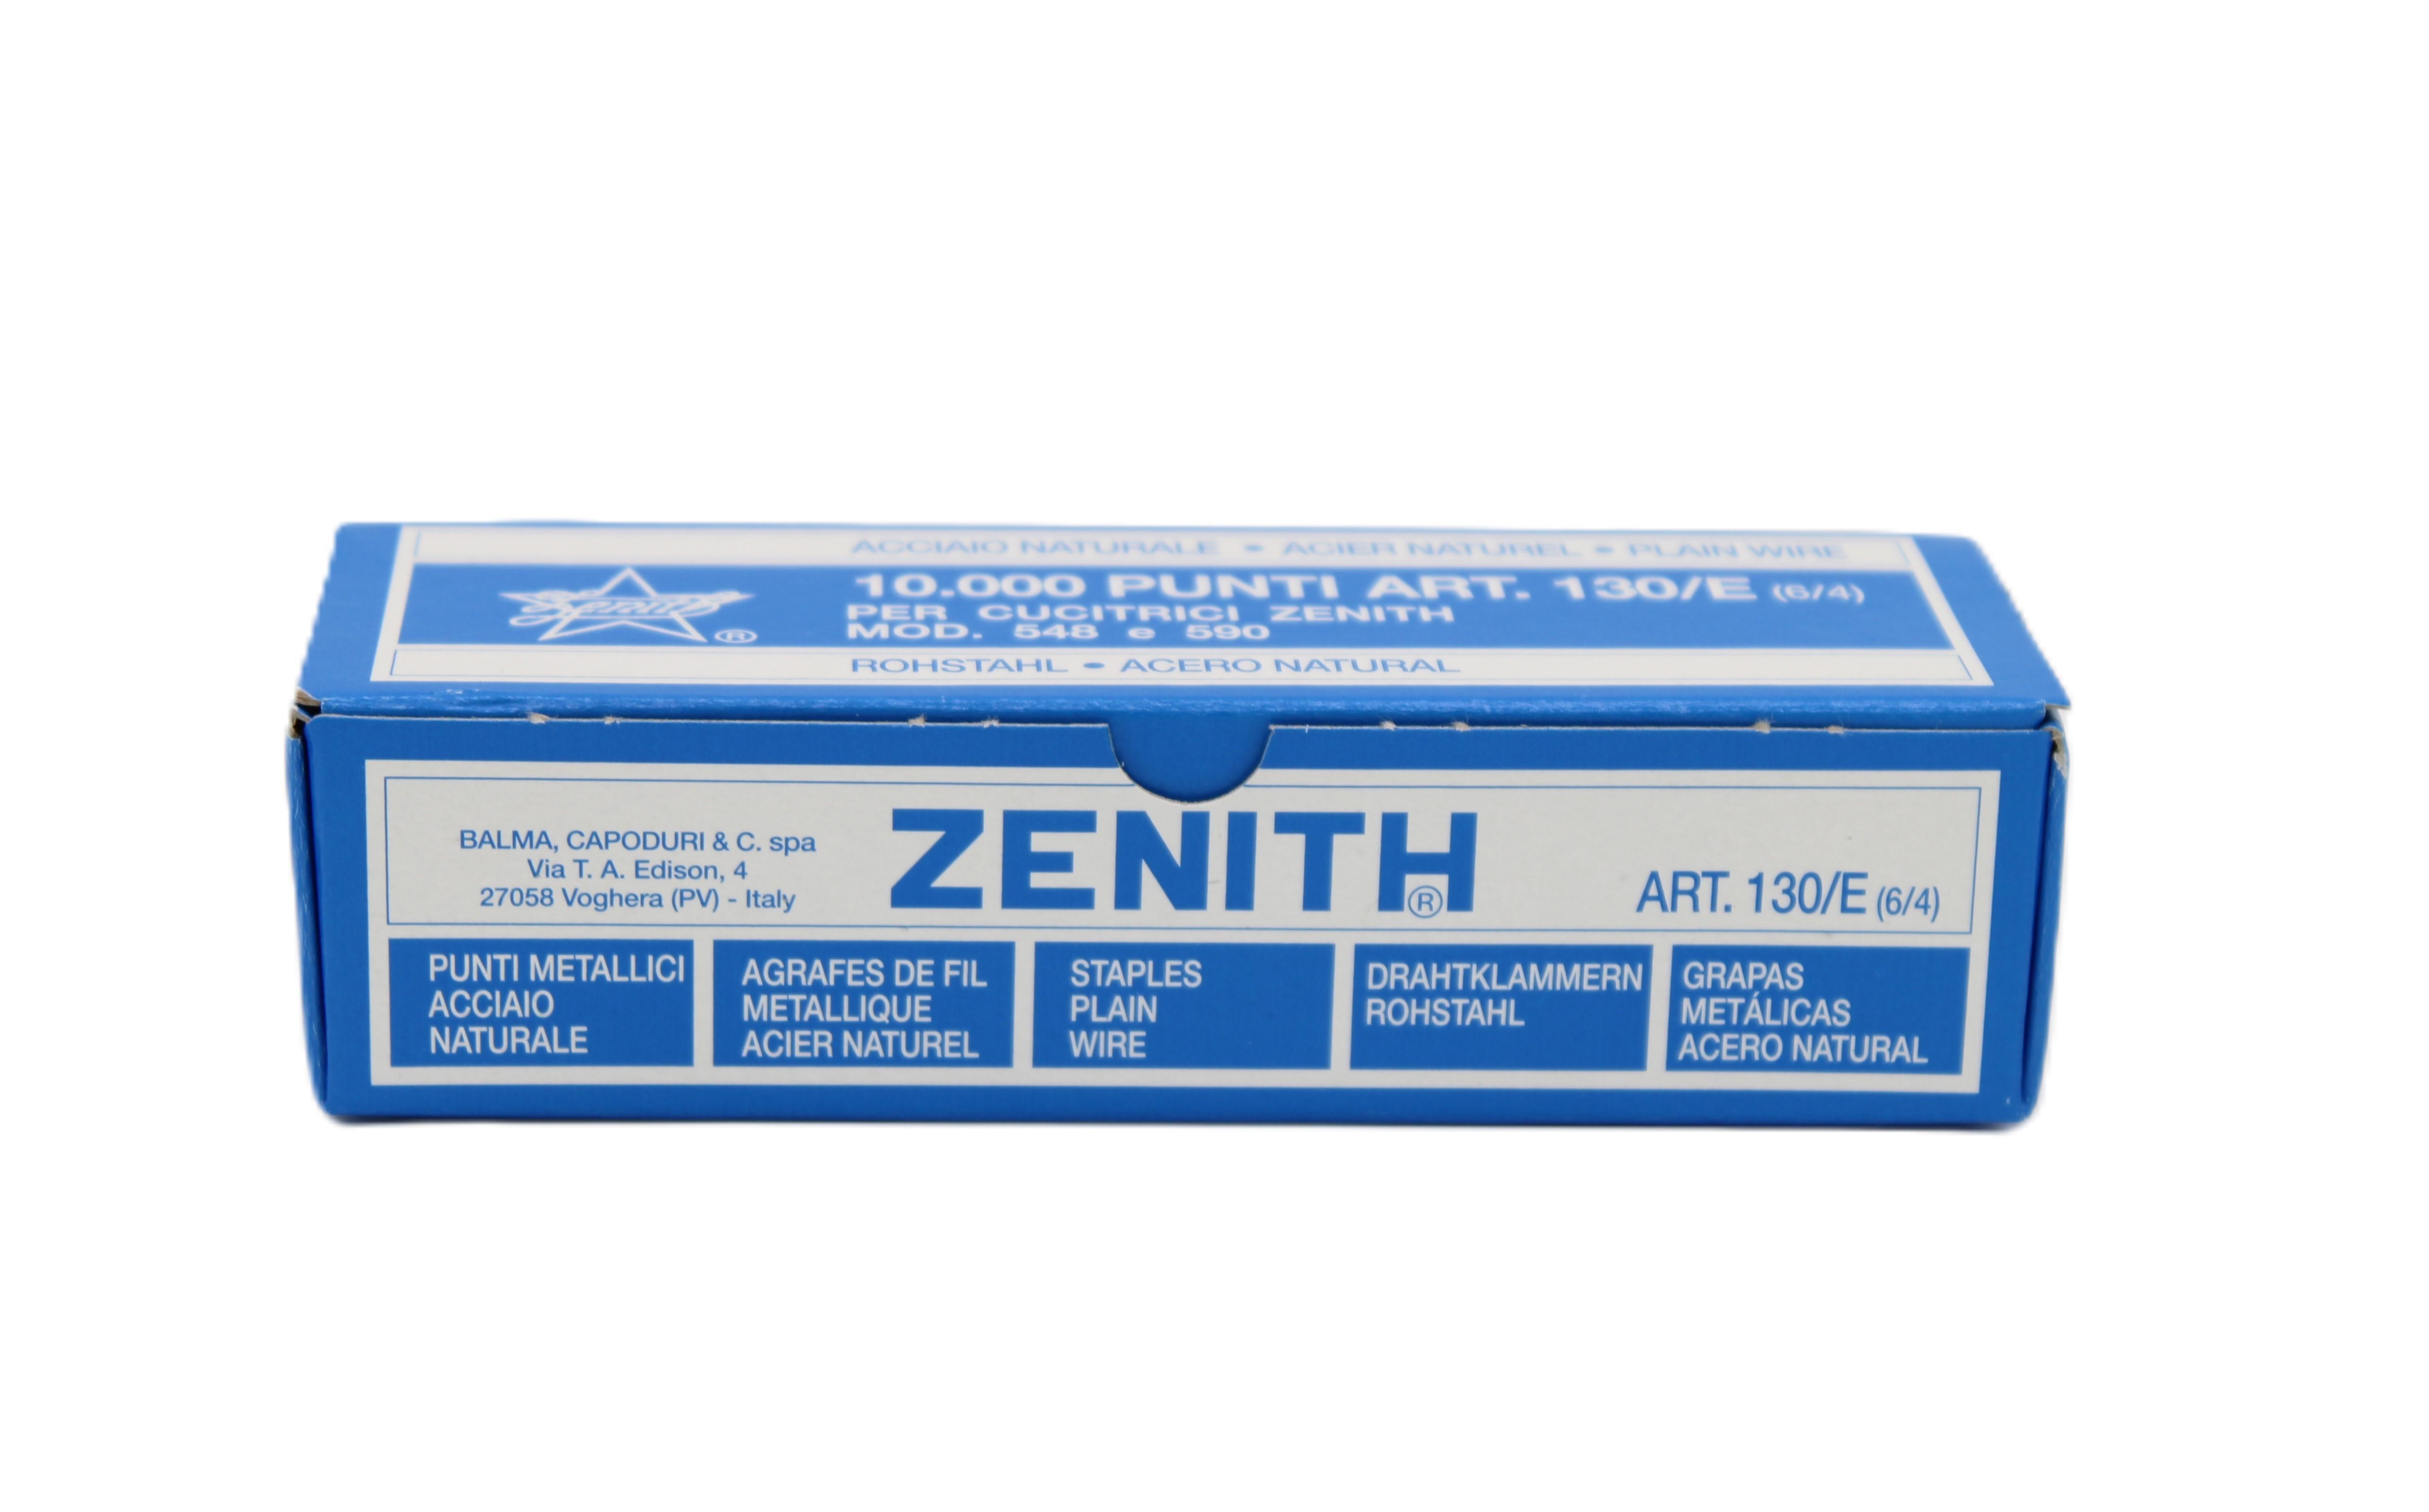 10.000 Punti metallici Zenith 130/E 6/4 confezione 10 scatole da 1.000